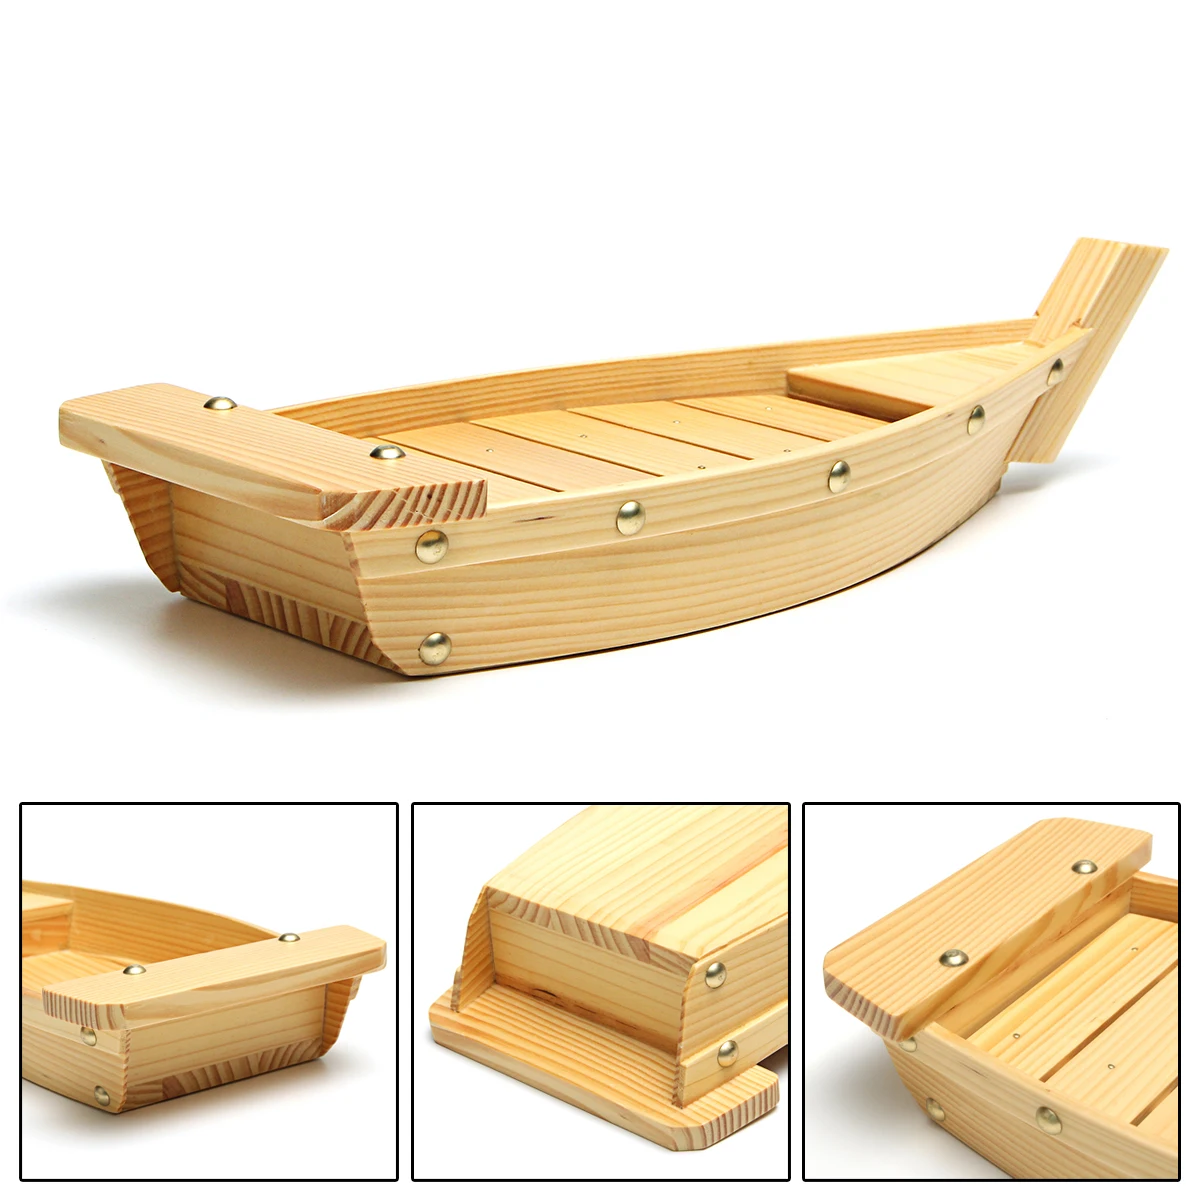 5 размеров японская кухня лодки для суши инструменты дерево ручной работы простой корабль сашими Ассорти холодные блюда посуда бар